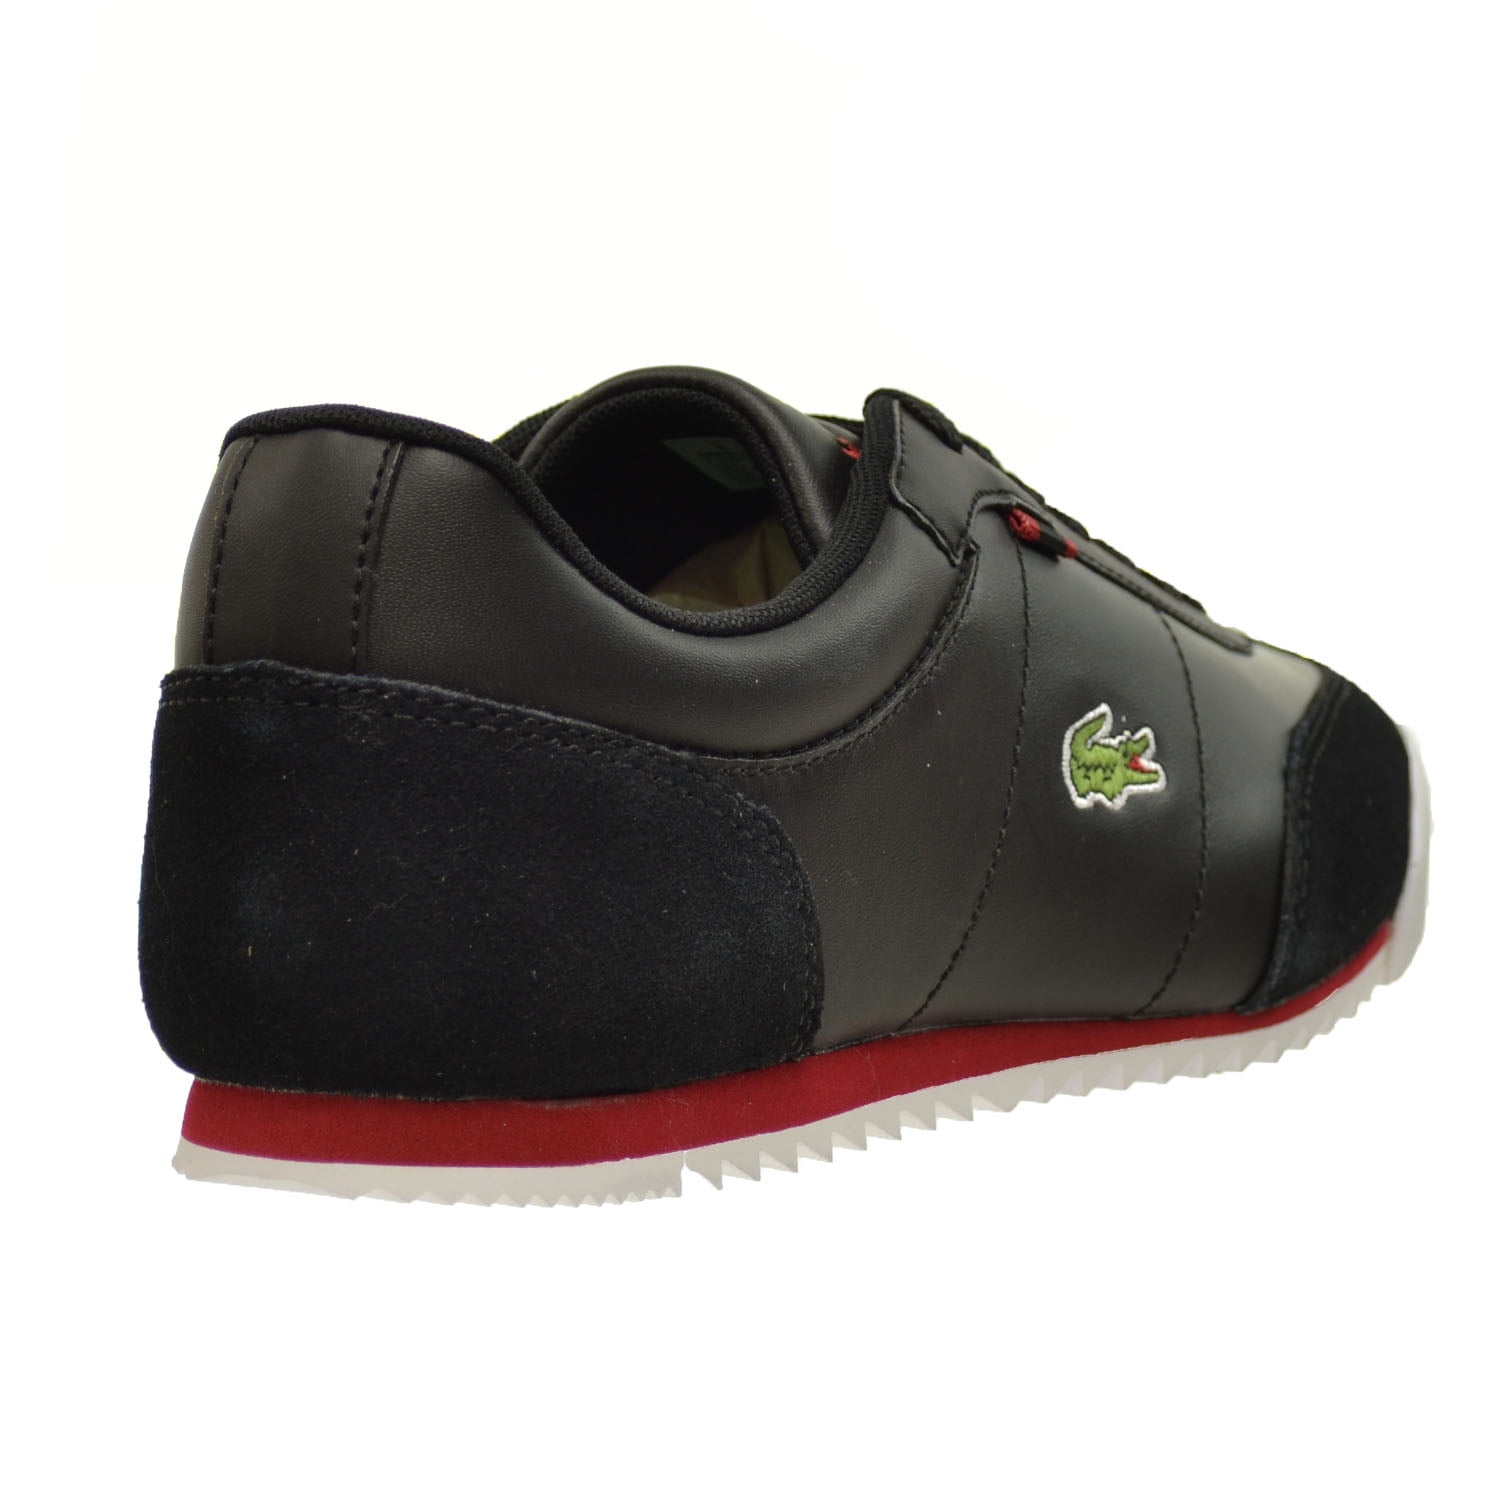 Lacoste Romeau HTB Shoes Black/Red 7-29spm2031-1b5 -